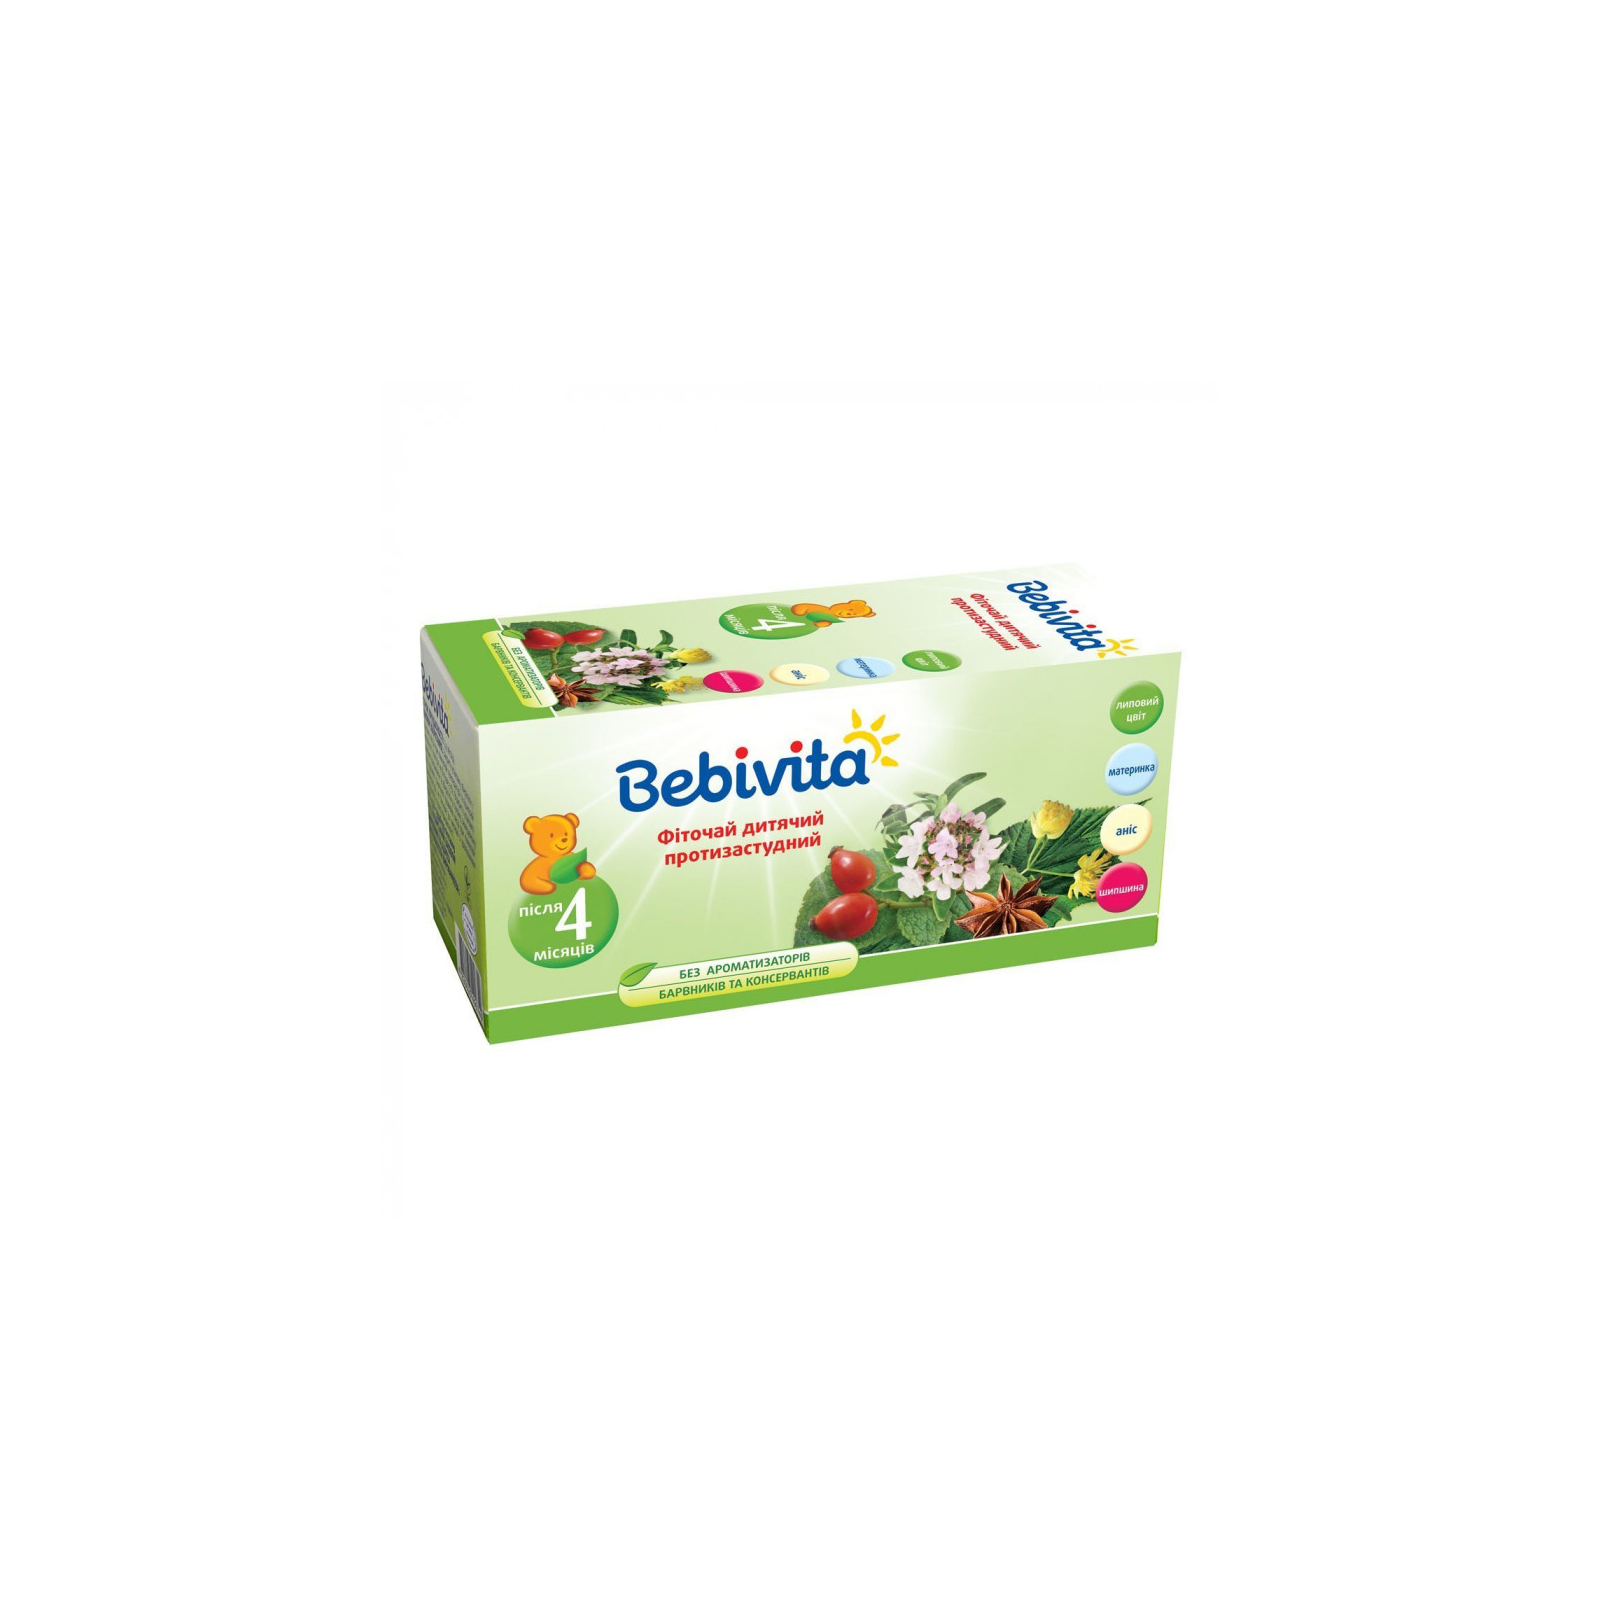 Дитячий чай Bebivita протизастудний, 300 г (4820025490619)